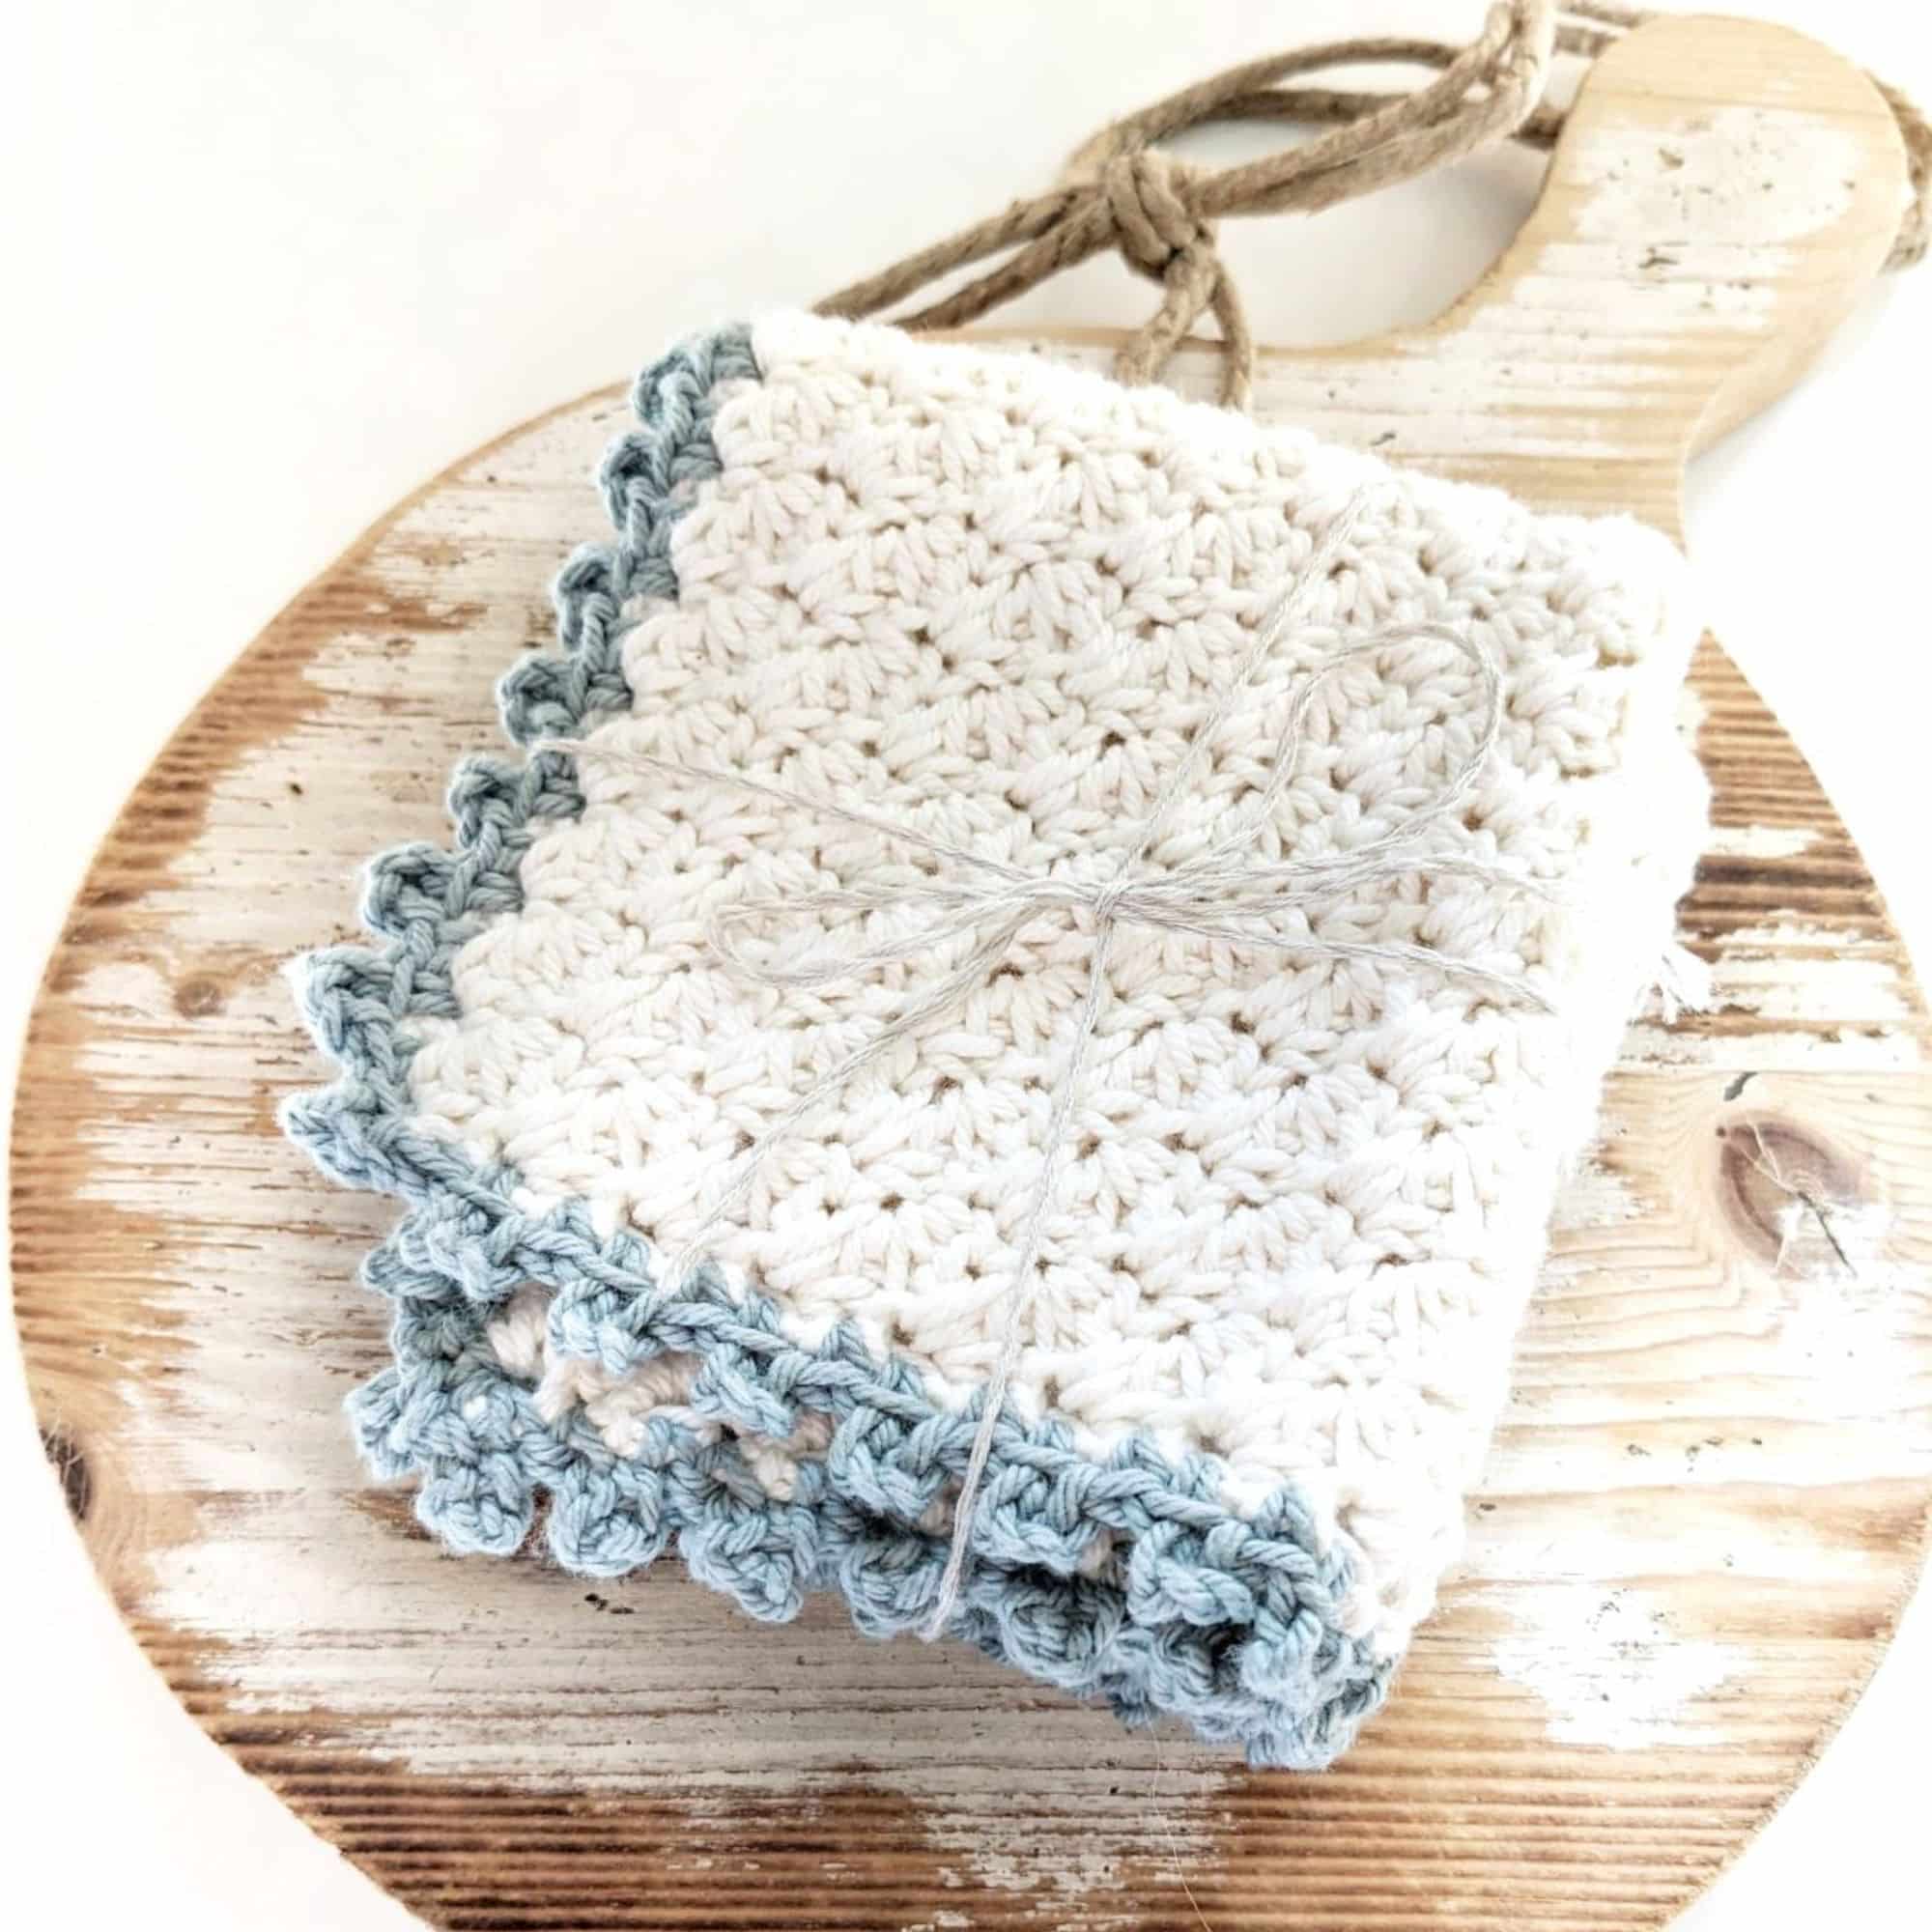 Crocheted Cotton Washcloths the Neutrals 